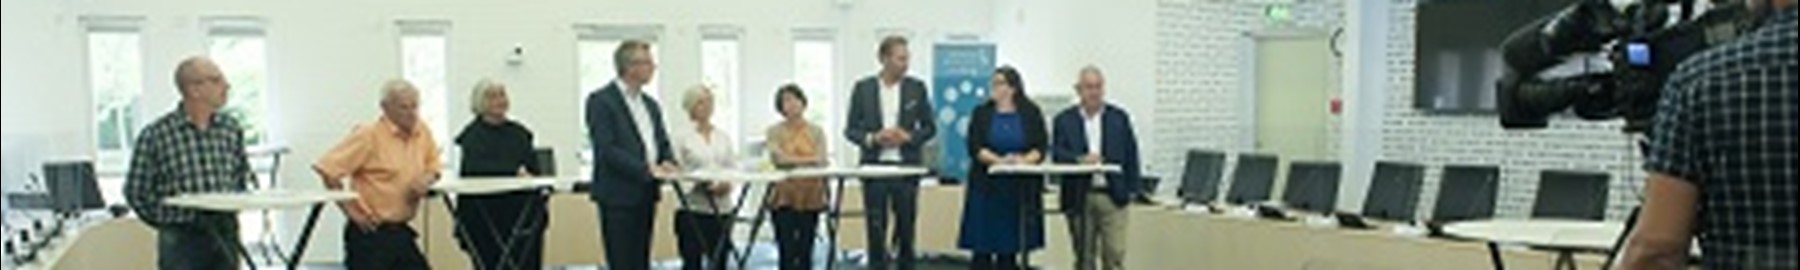 Region Sjælland går efter 4 ugers ventetid på høreapparater i 2021